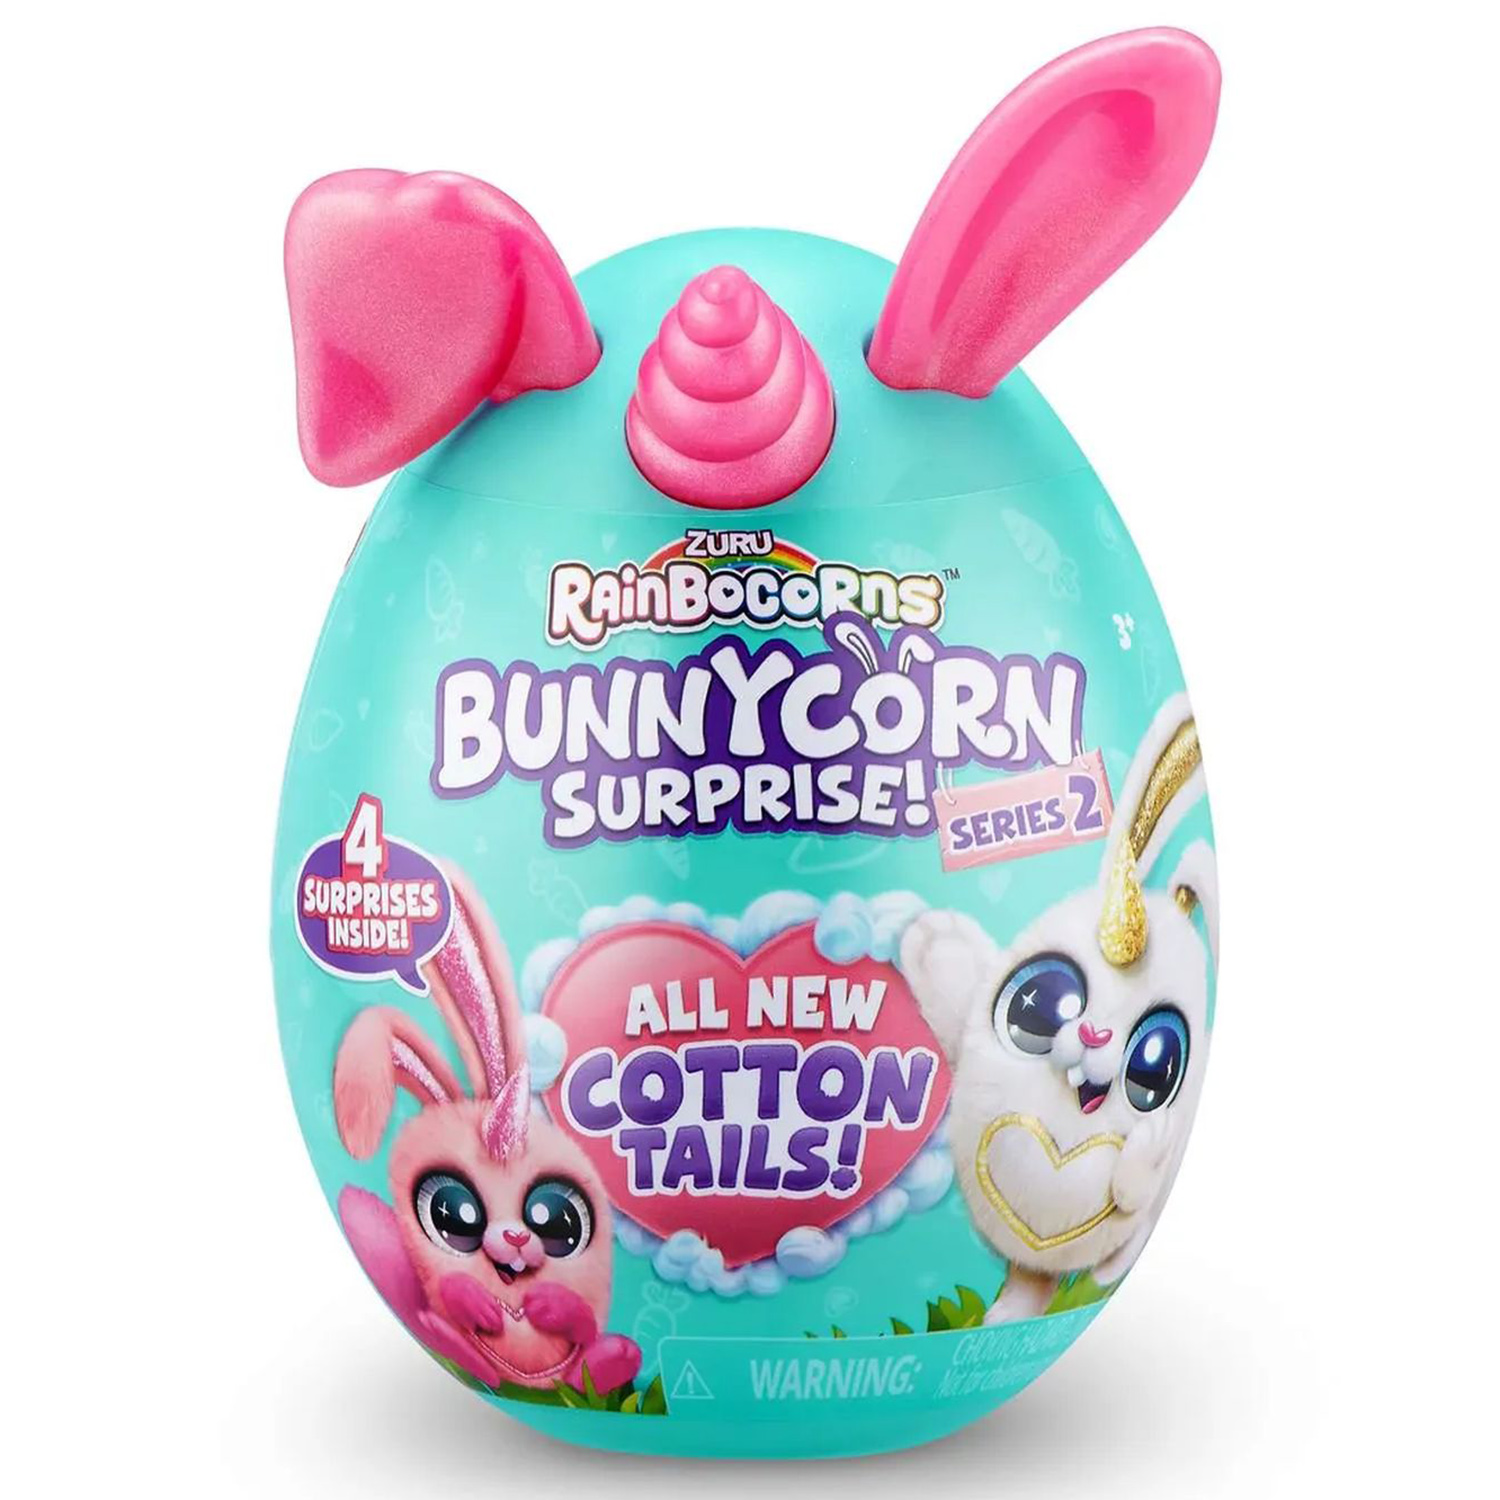 Игровой набор Zuru Rainbocorns Bunnycorn, сюрпризы в яйце серия 2, розовые ушки игровой набор zuru rainbocorns bunnycorn сюрпризы в яйце серия 2 розовые ушки